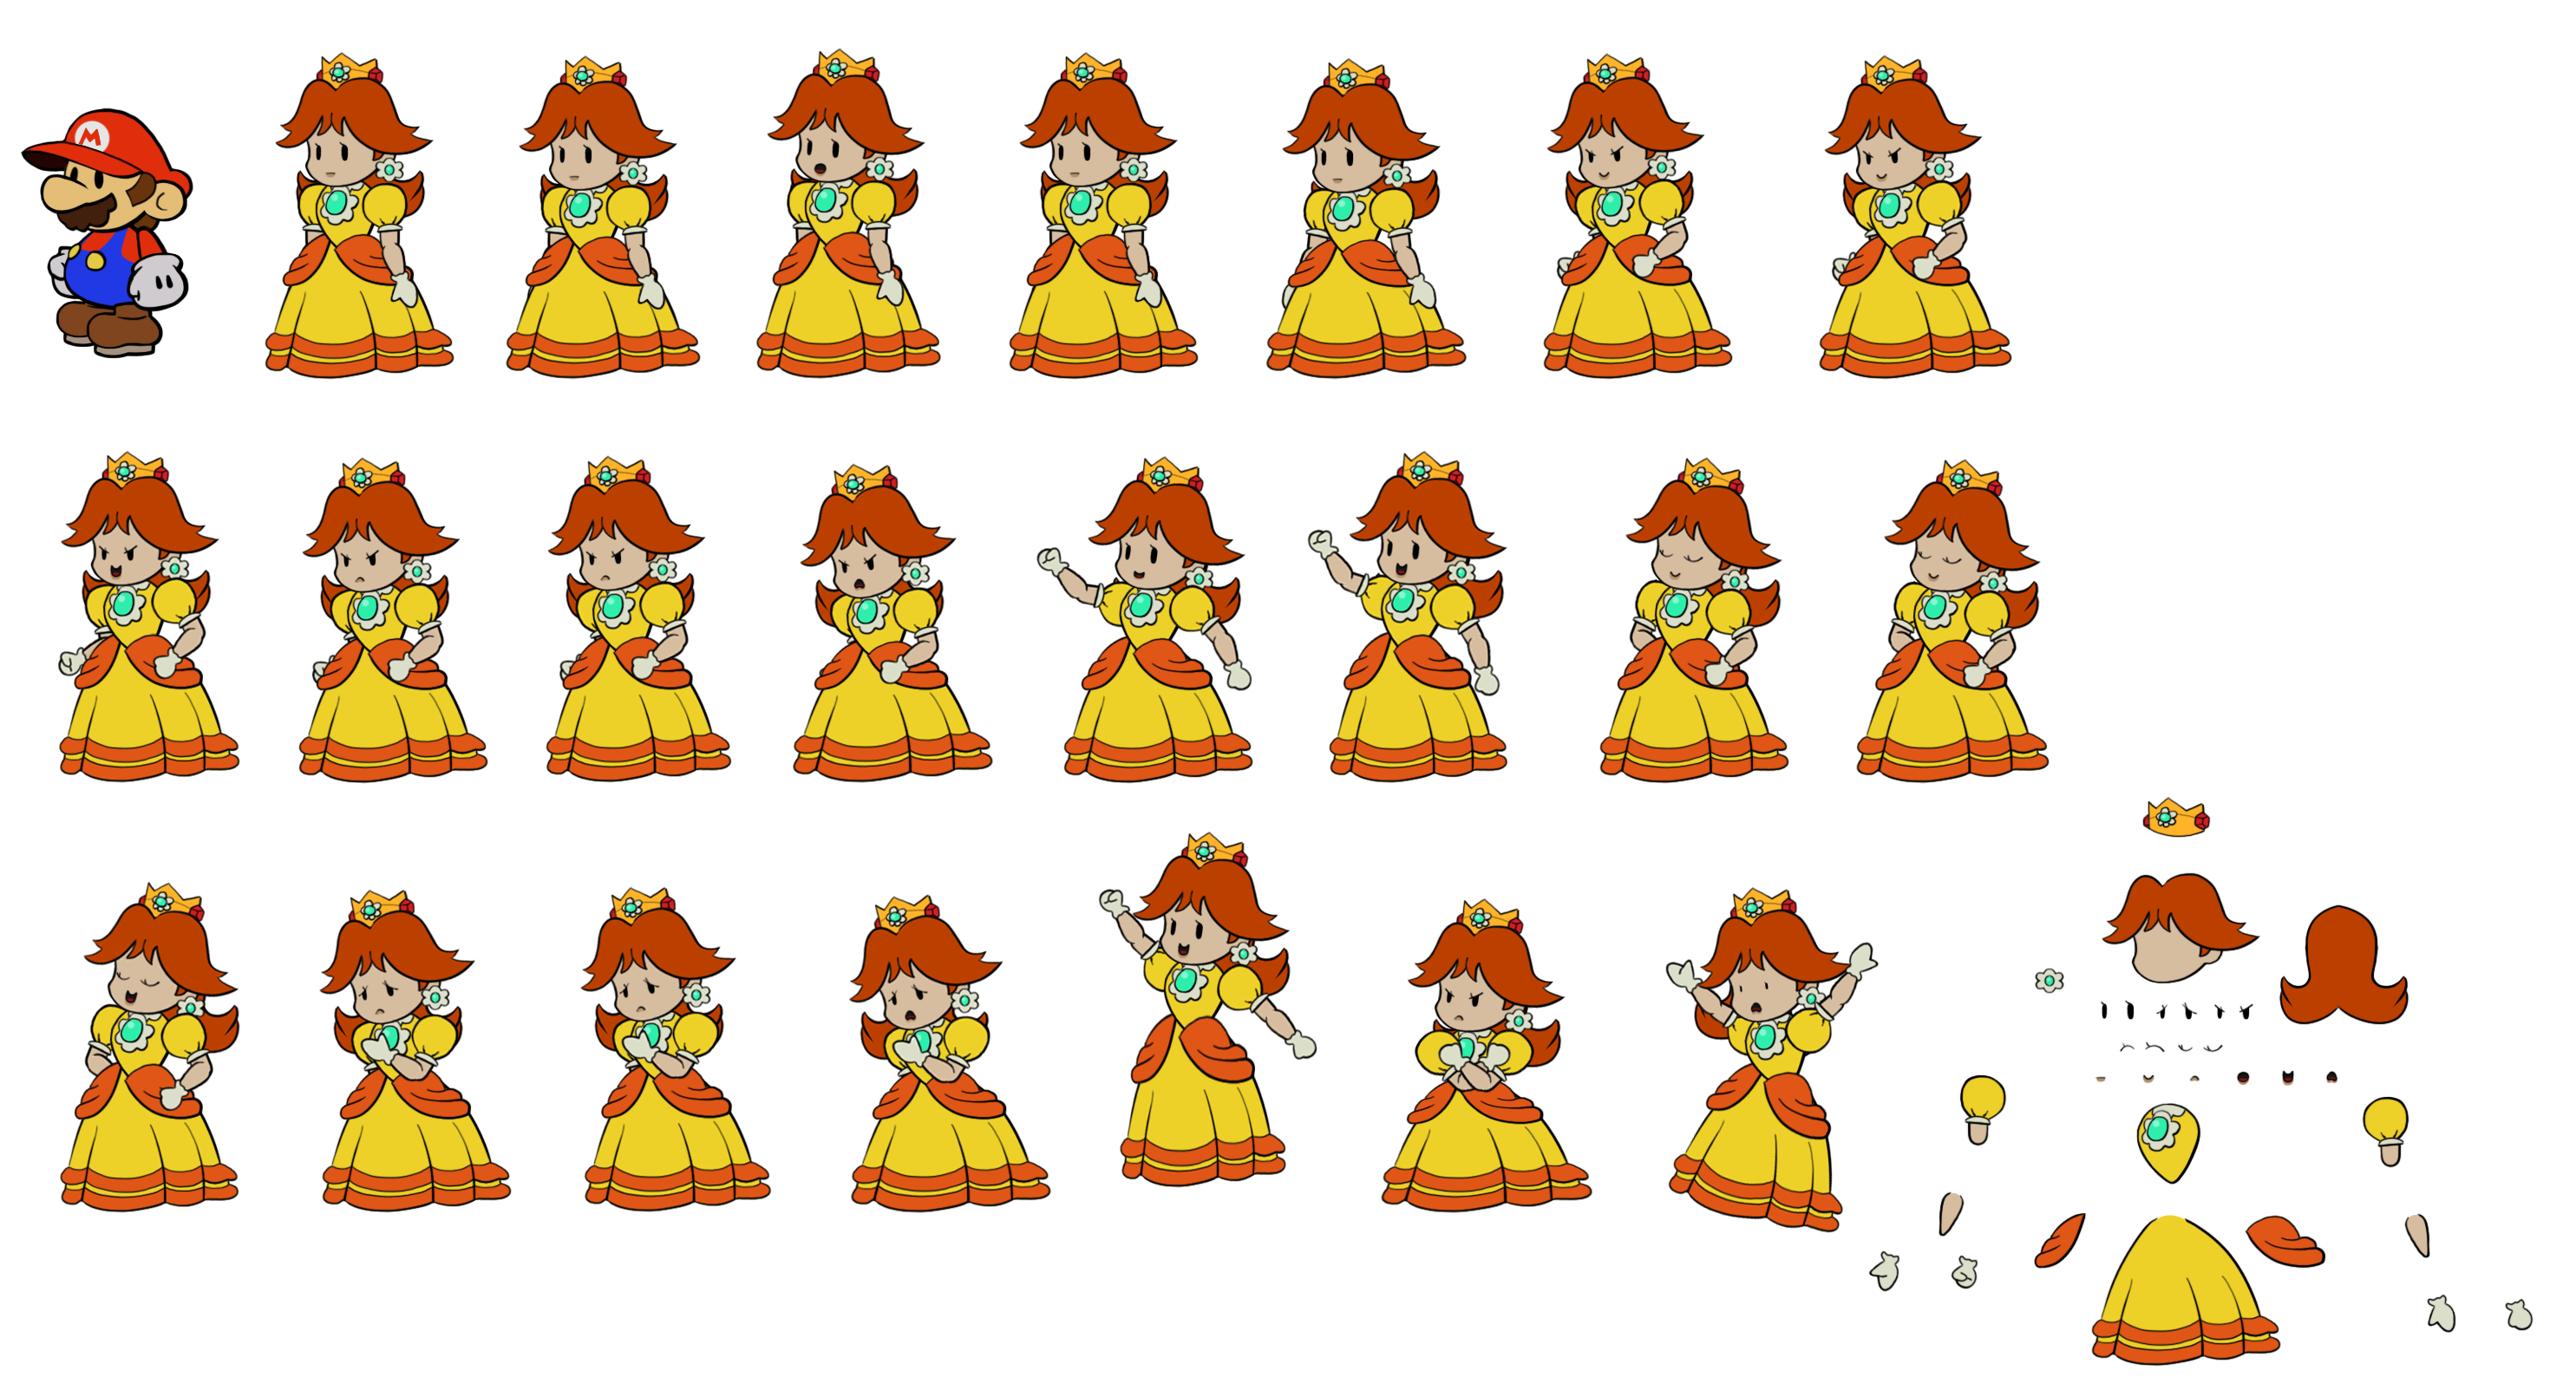 Daisy (Paper Mario-Style)